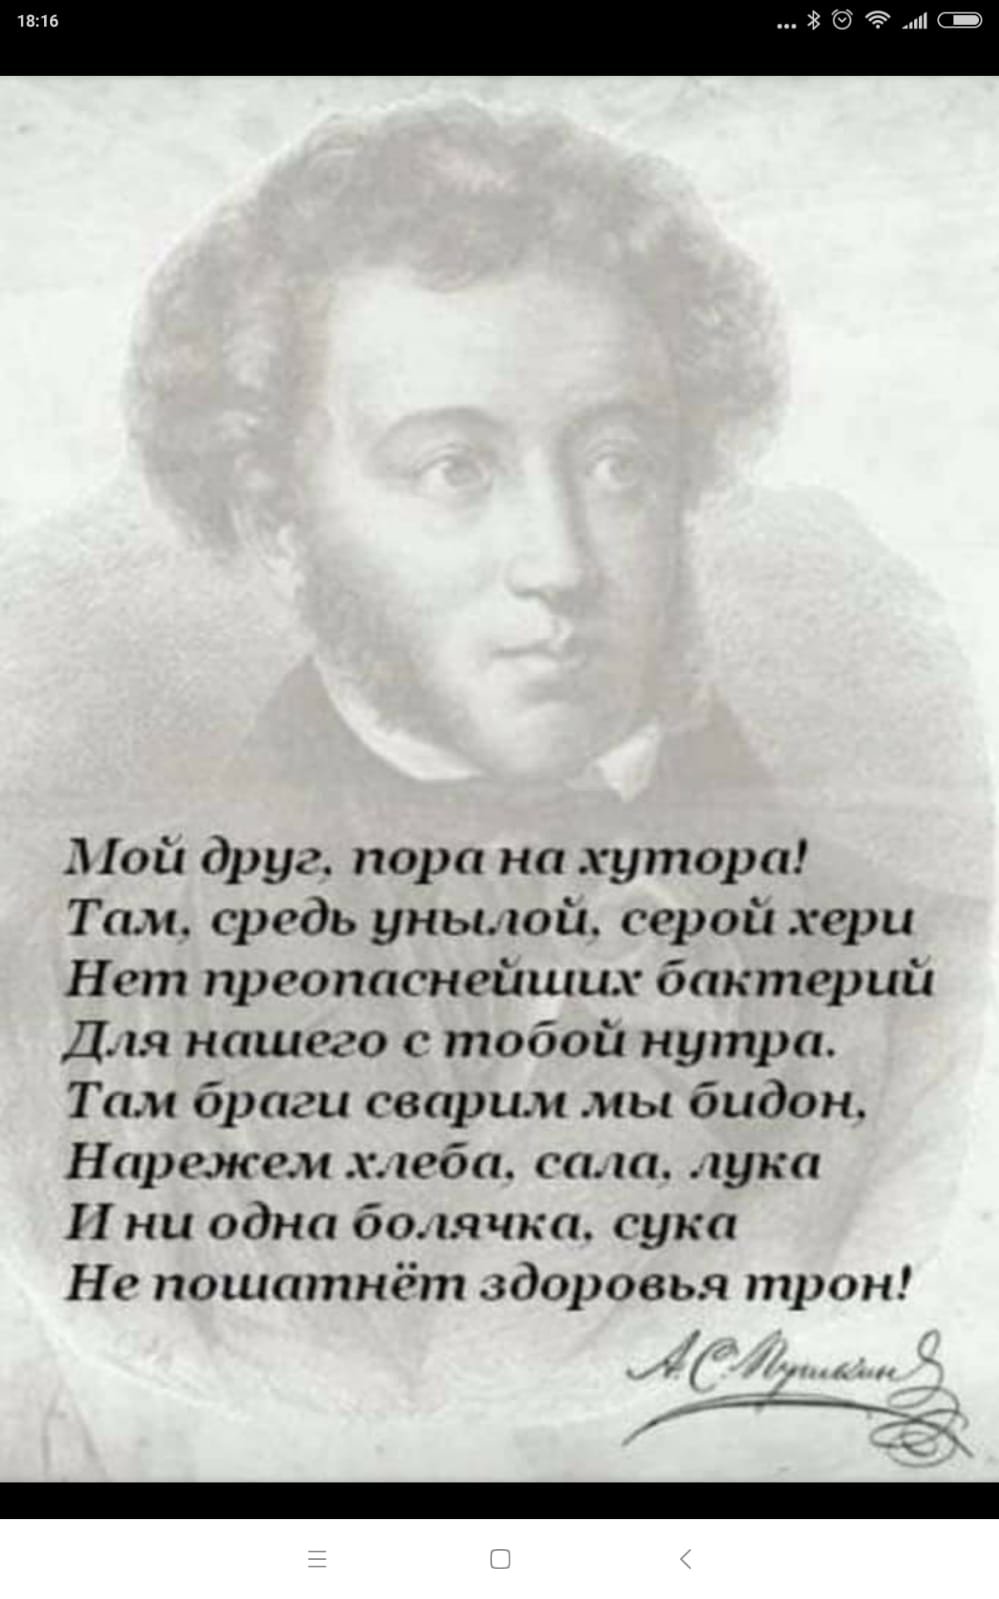 Ай да Пушкин